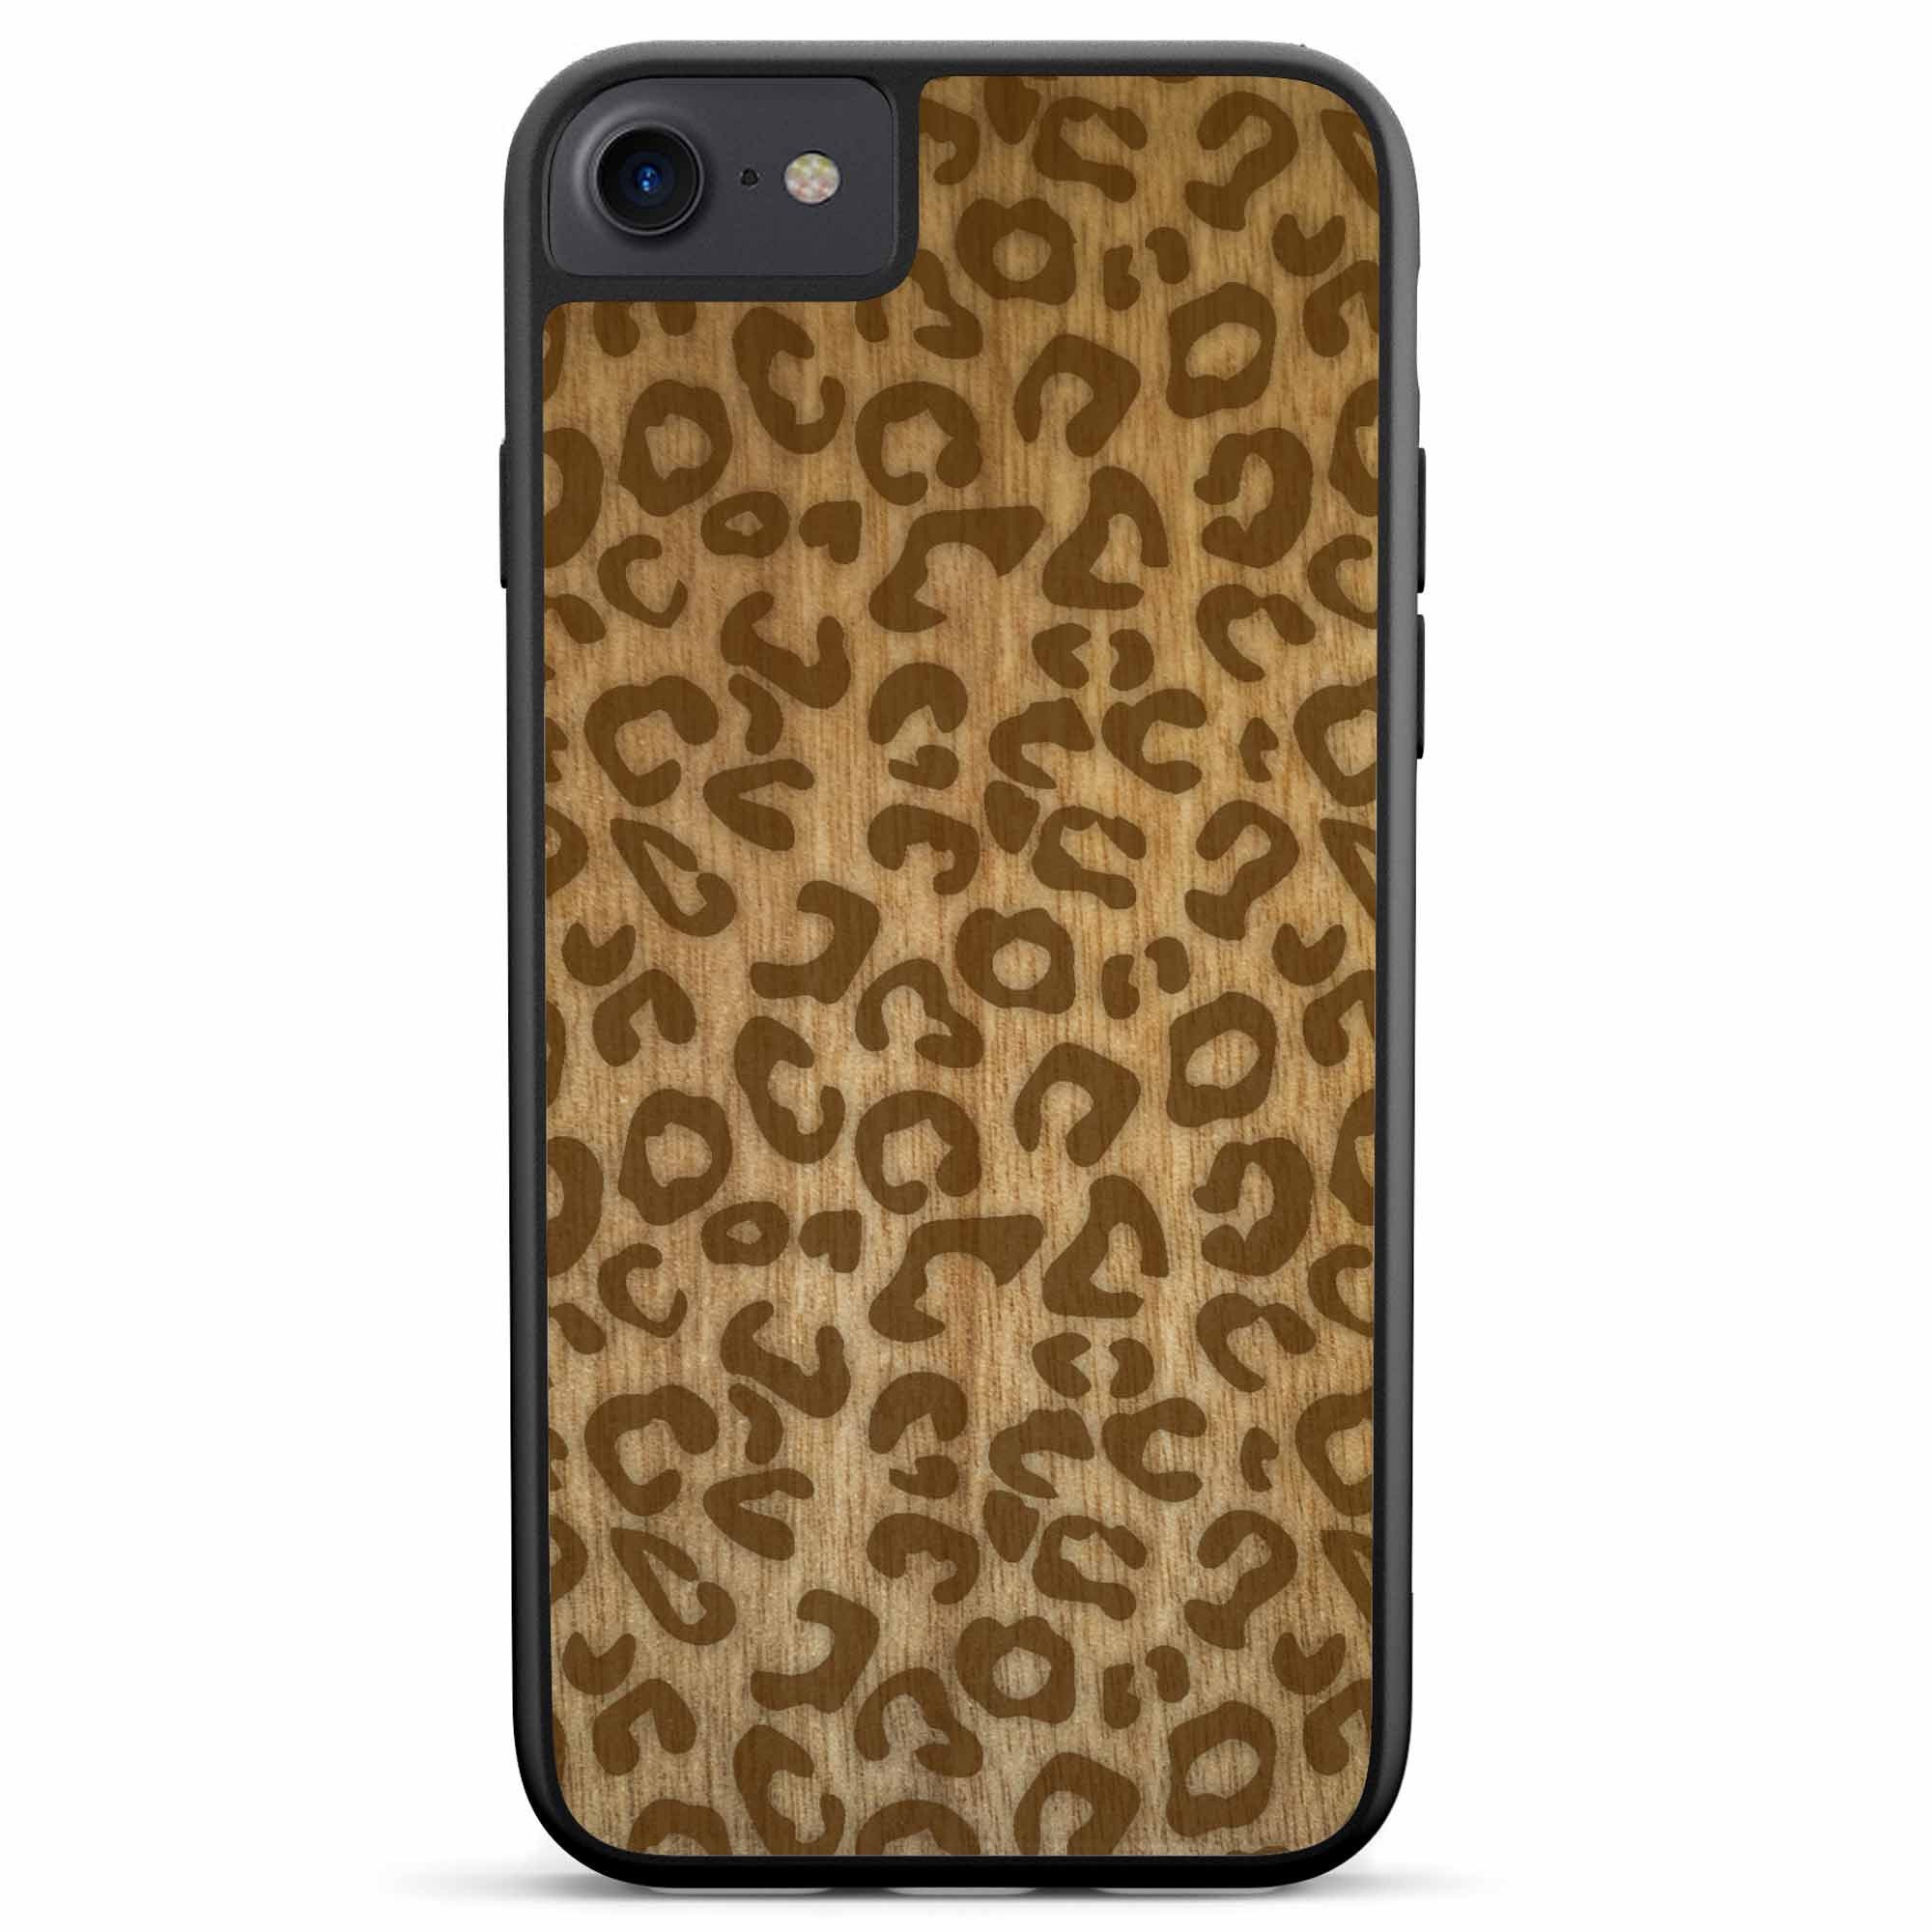 Custodia per telefono in legno con stampa ghepardo per iPhone SE 2